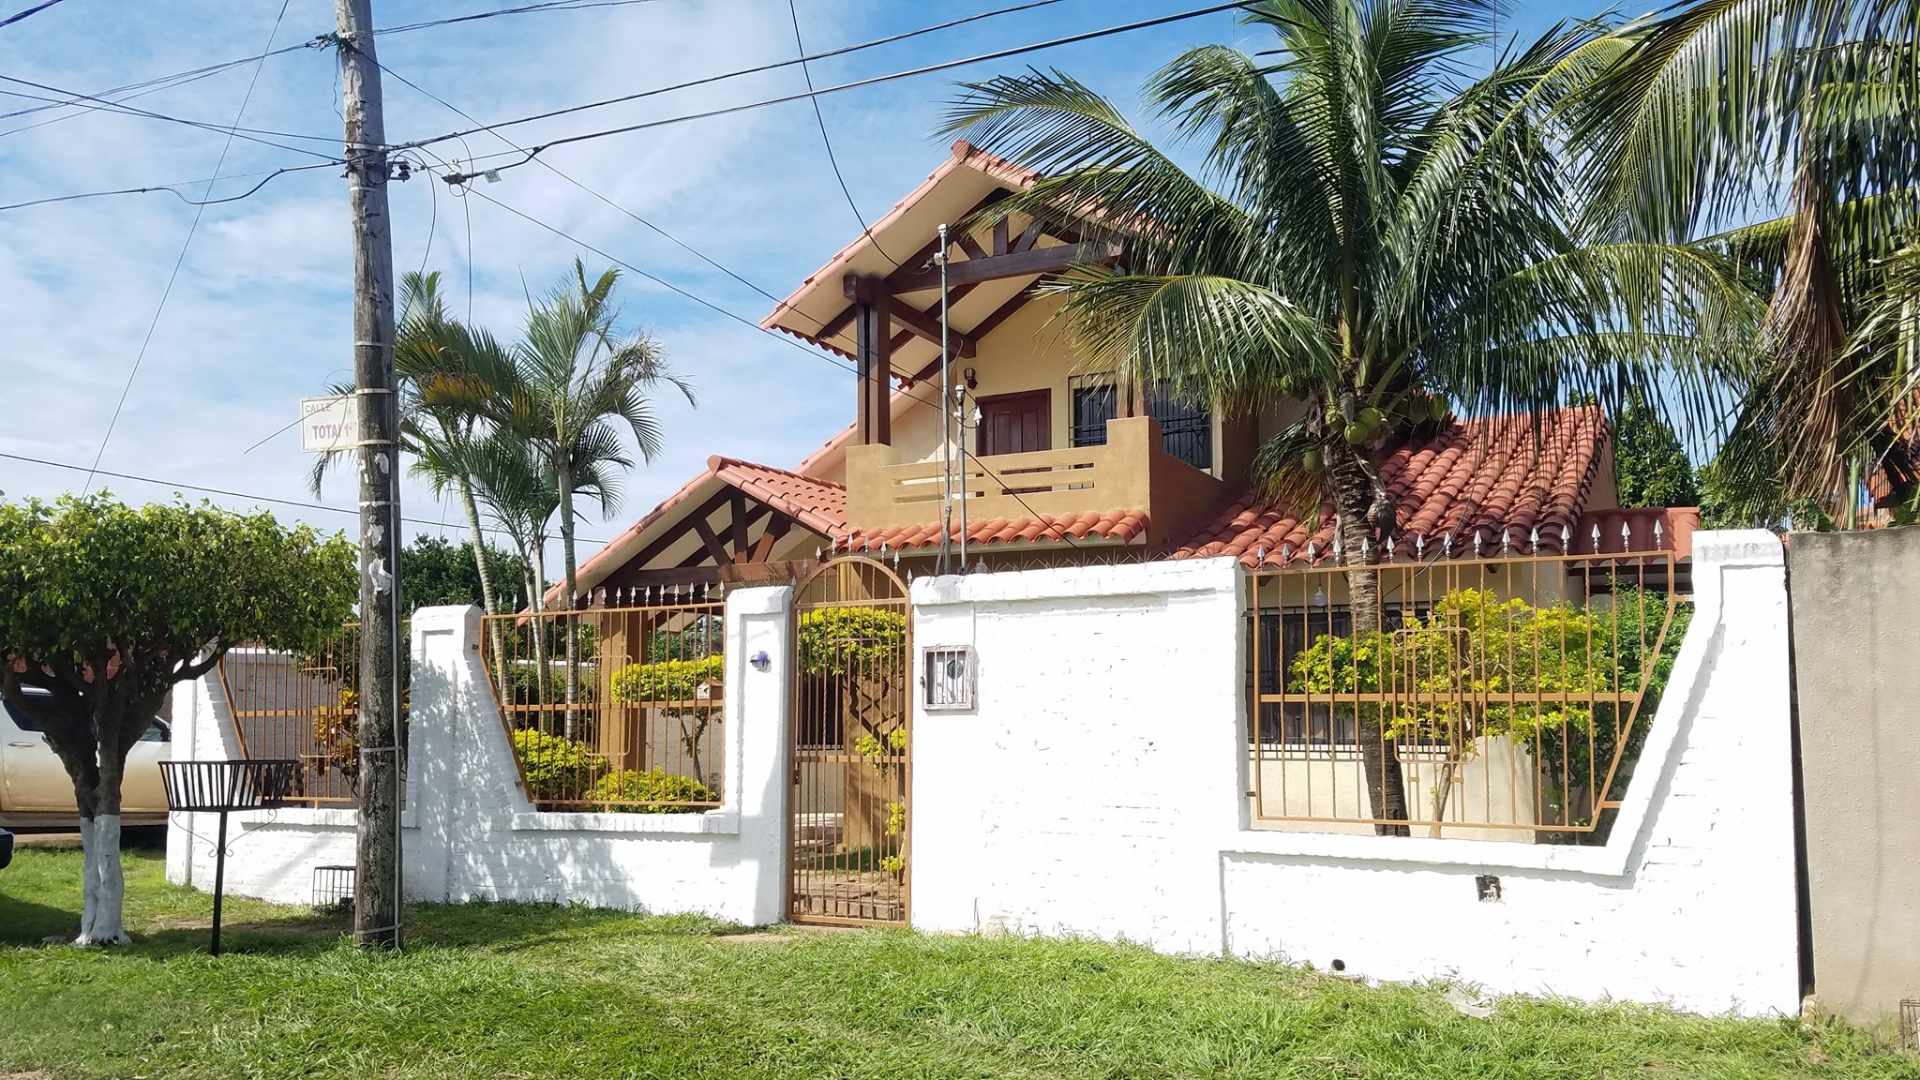 Casa en Venta♦ $us. 99.000.-AMPLIA Y LINDA CASA EN VENTA – ZONA LOS CHACOS - 6TO ANILLO❗ ❗  Foto 4